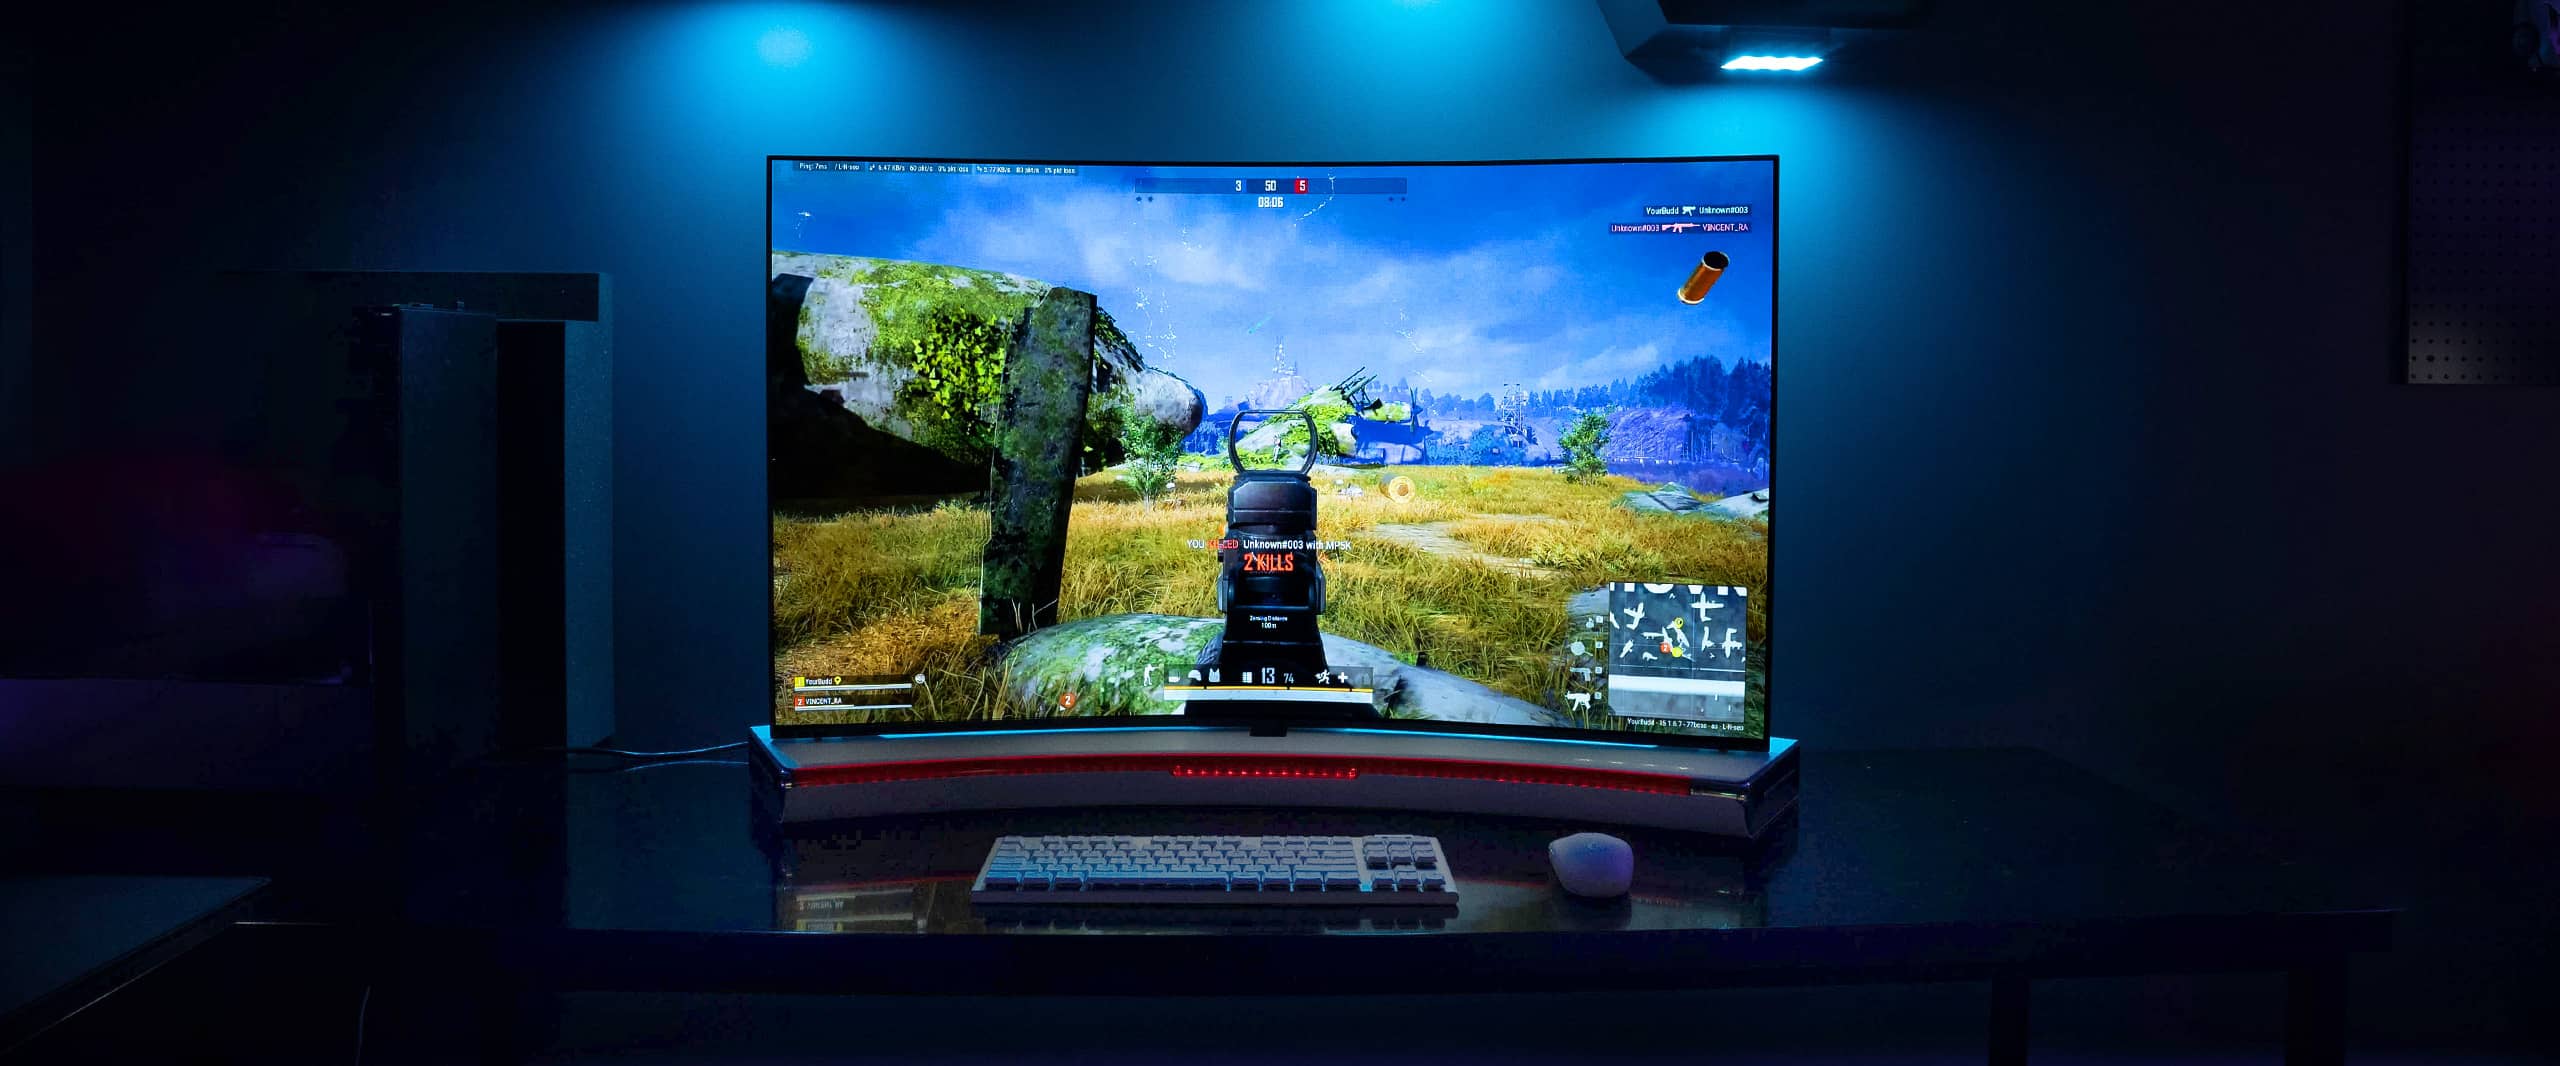 ゲームはBendableGamingOLEDディスプレイでプレイされており、キーボードとモニターは下に見える。